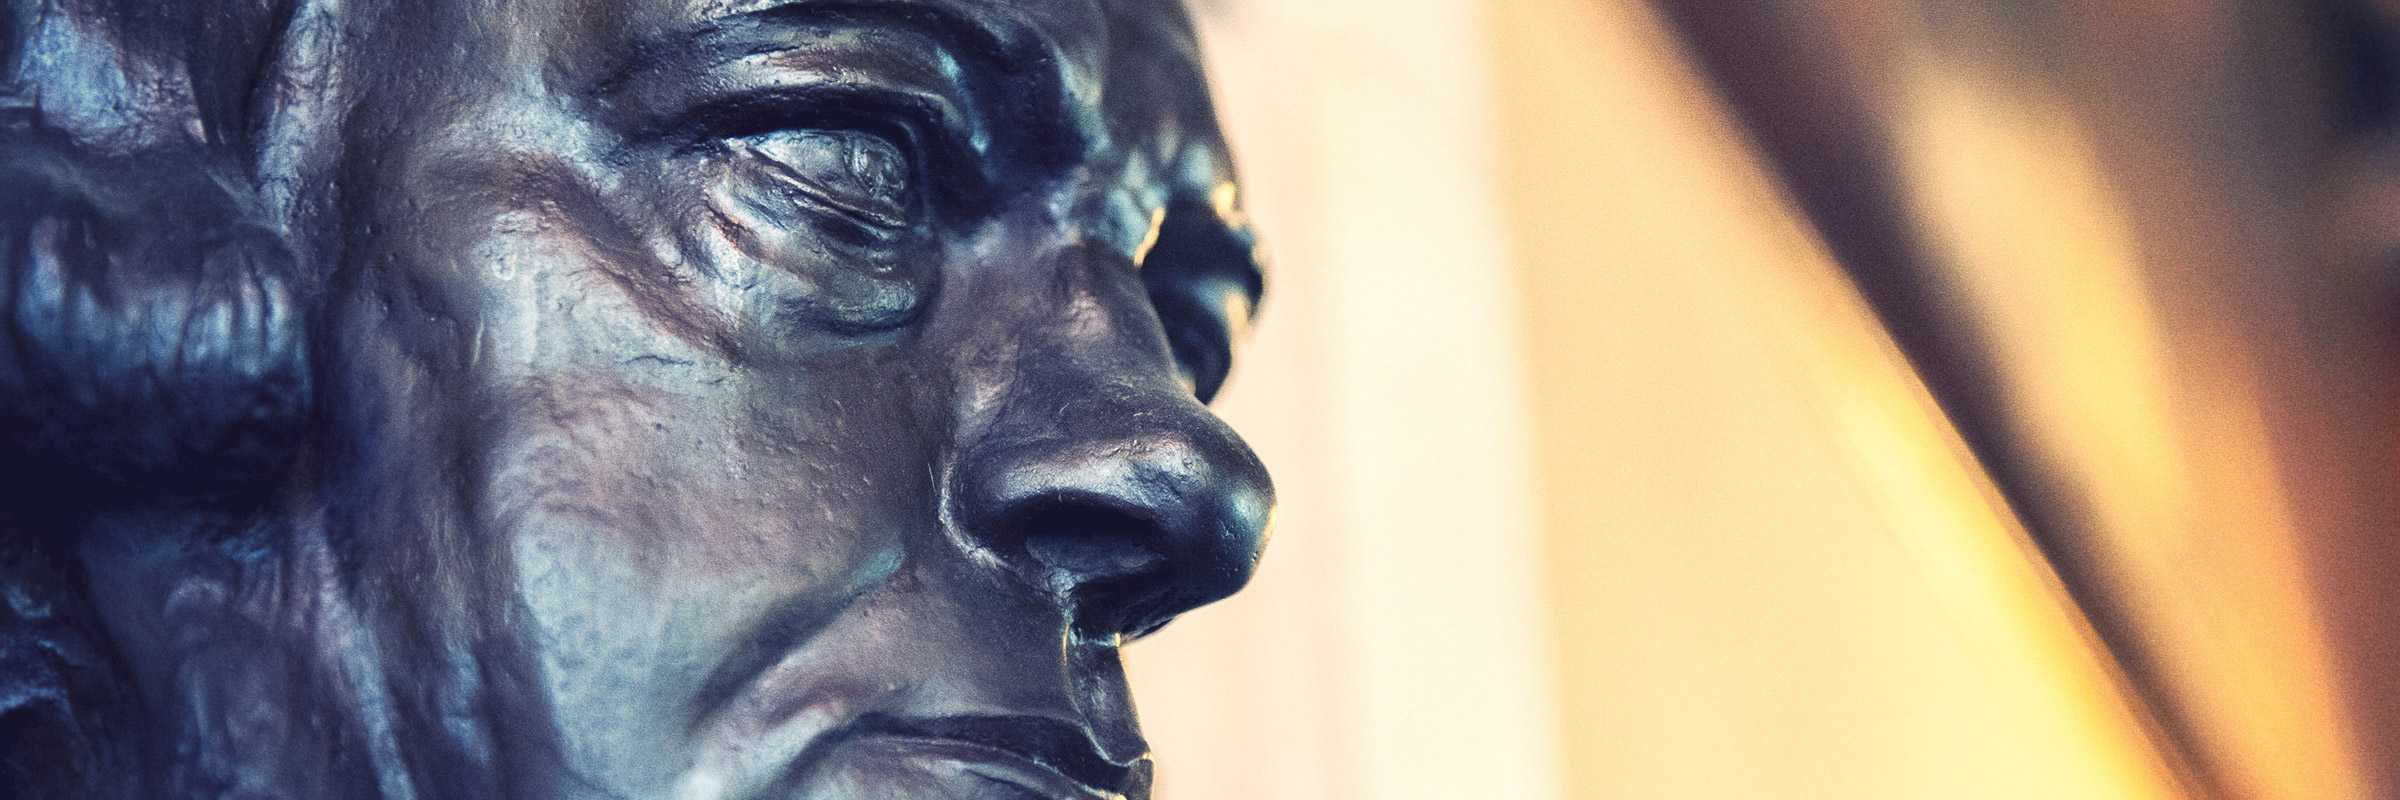 Particolare del busto di Daniele Manin esposto nella Sala Tommaseo, in Ateneo Veneto — (Archivio Venipedia/Bazzmann)